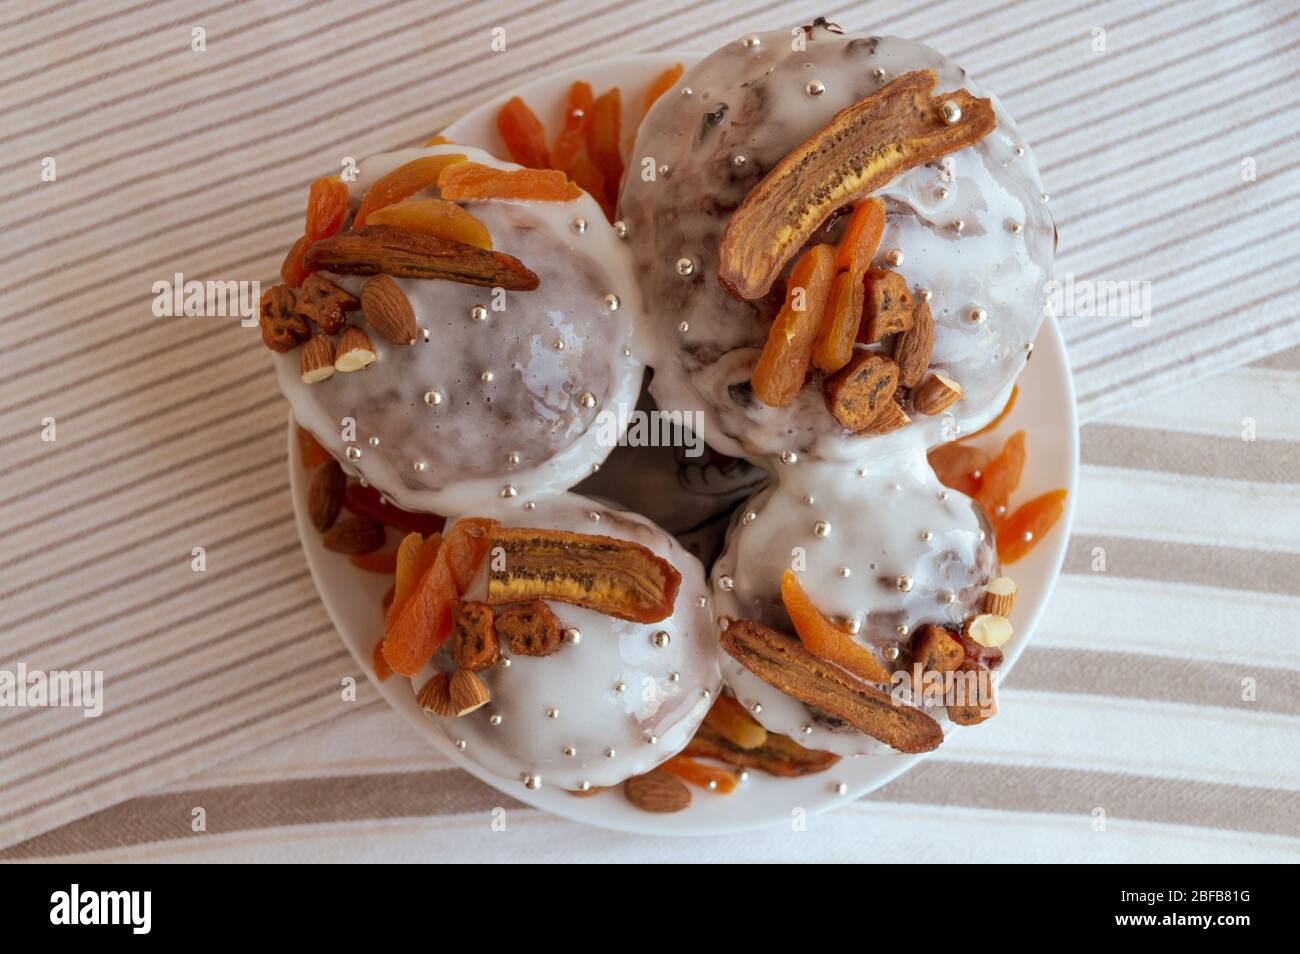 Vue sur le kulich traditionnel orthodoxe de Pâques. Quatre délicieux gâteaux élégants ensemble à la plaque décorée de bananes séchées, abricots orange, amandes Banque D'Images